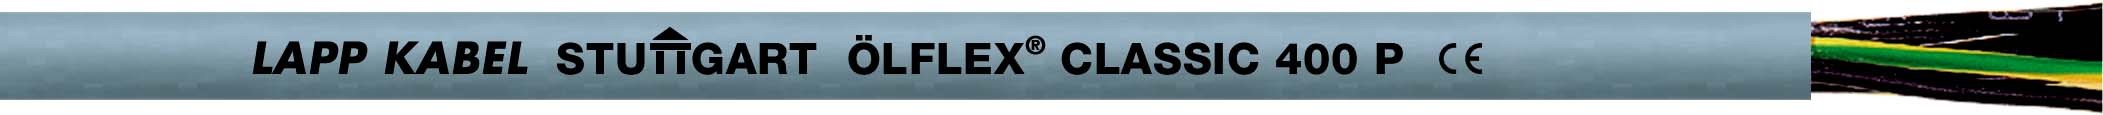 ÖLFLEX CLASSIC 400 P 5G1 1312205 R50 